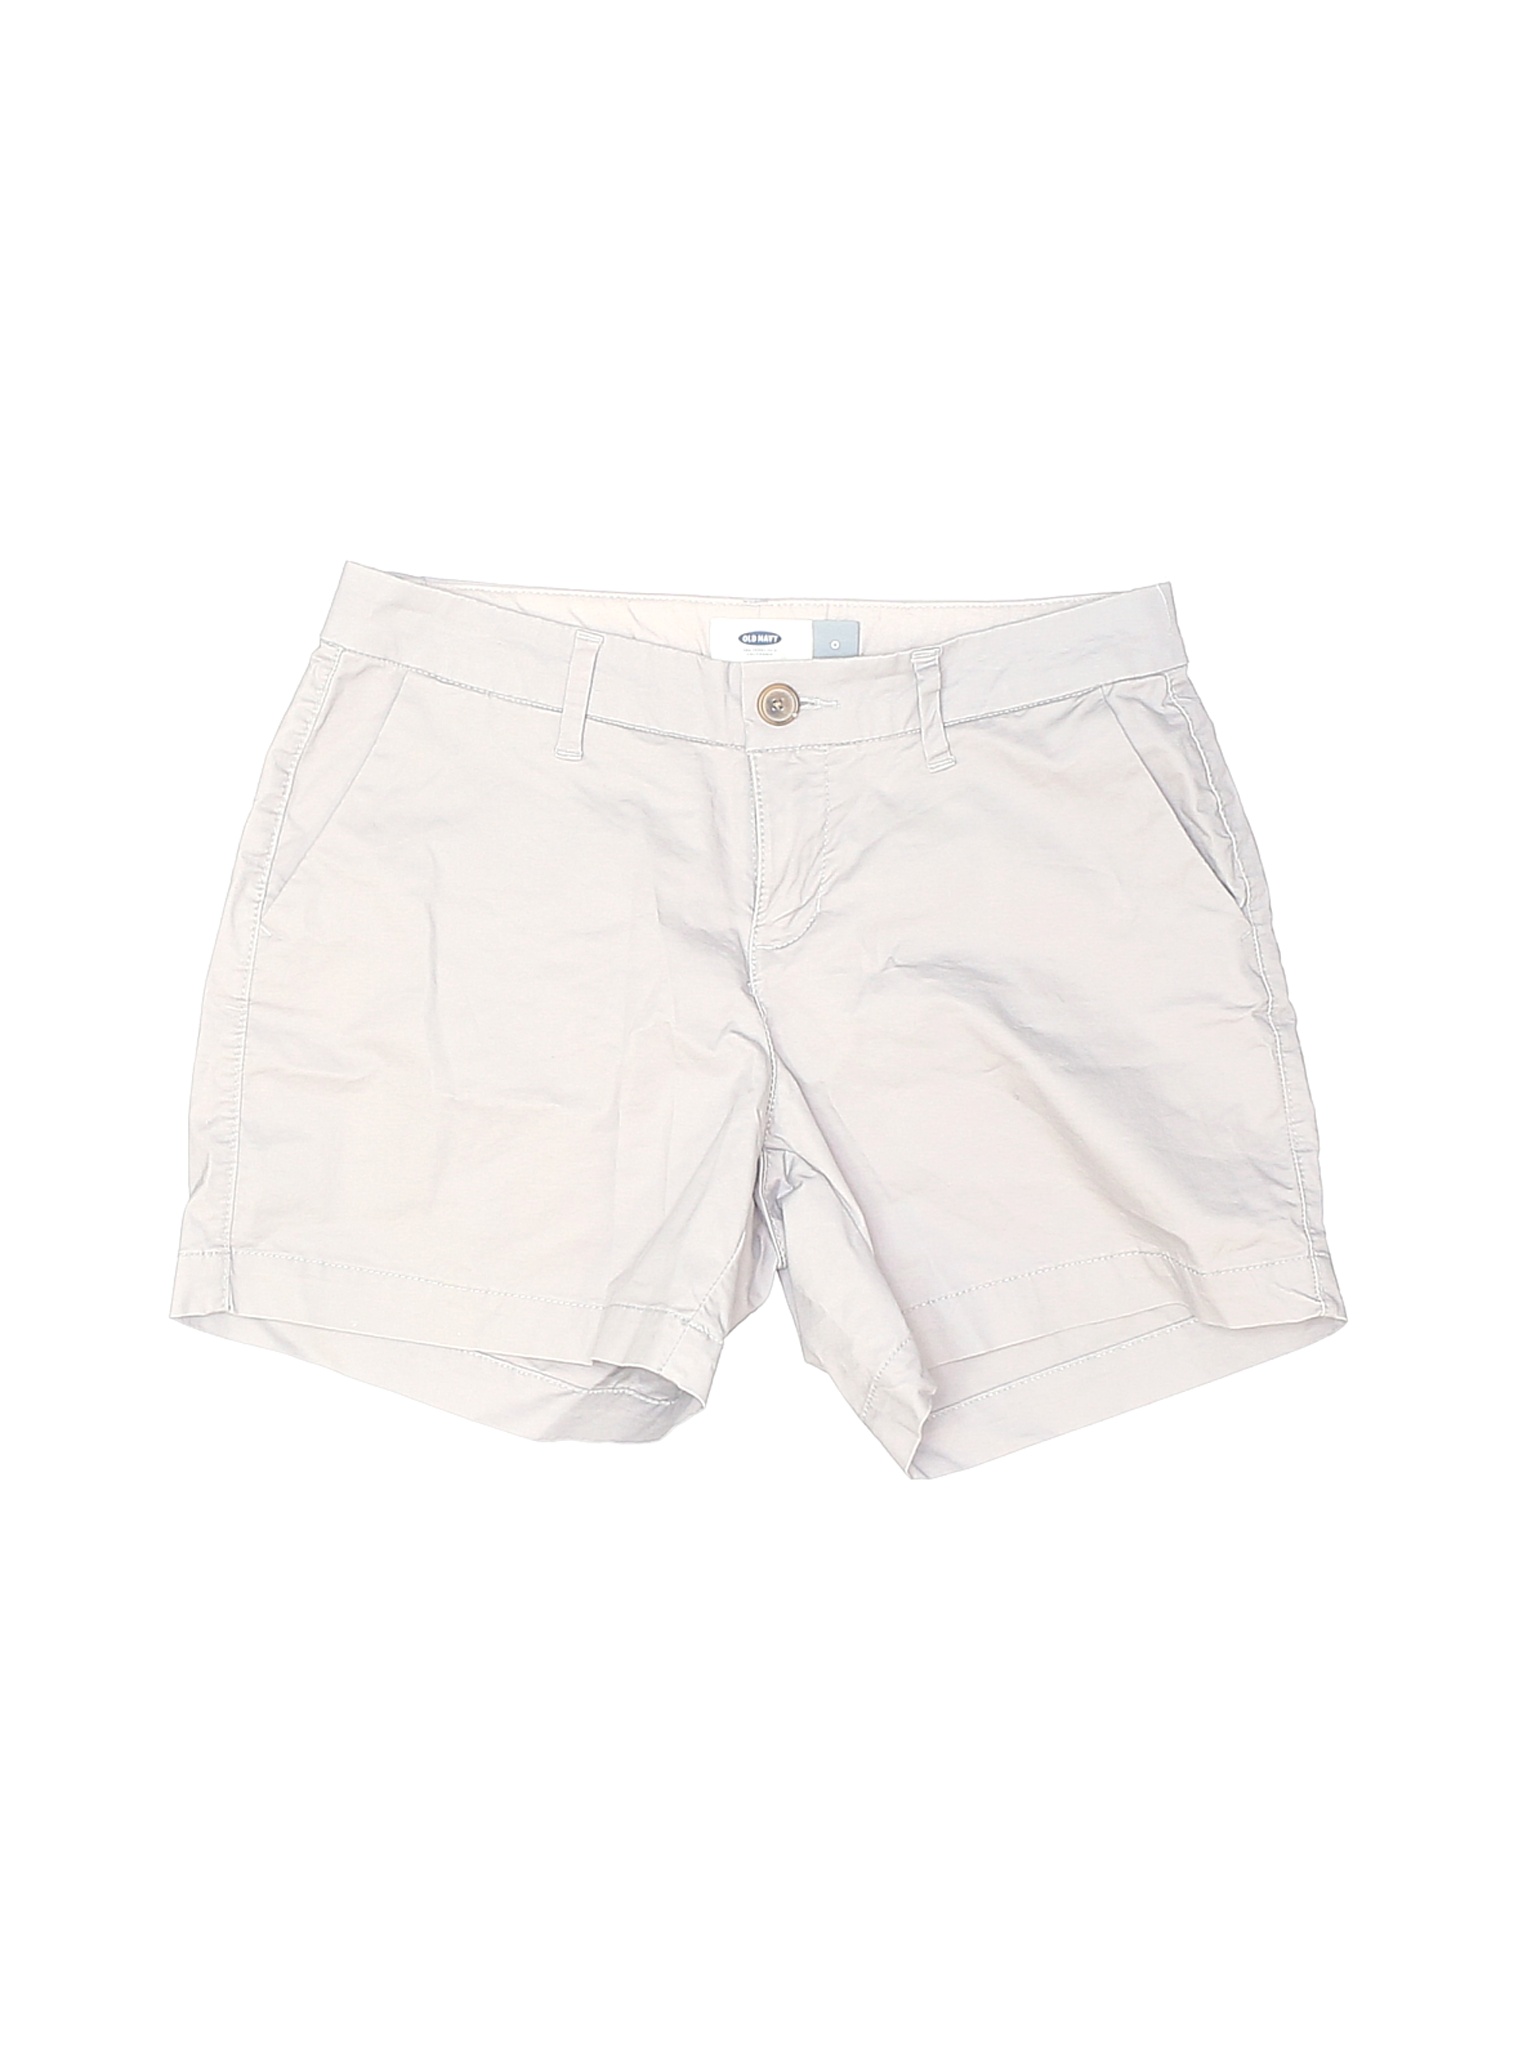 Old Navy Women White Shorts 0 | eBay